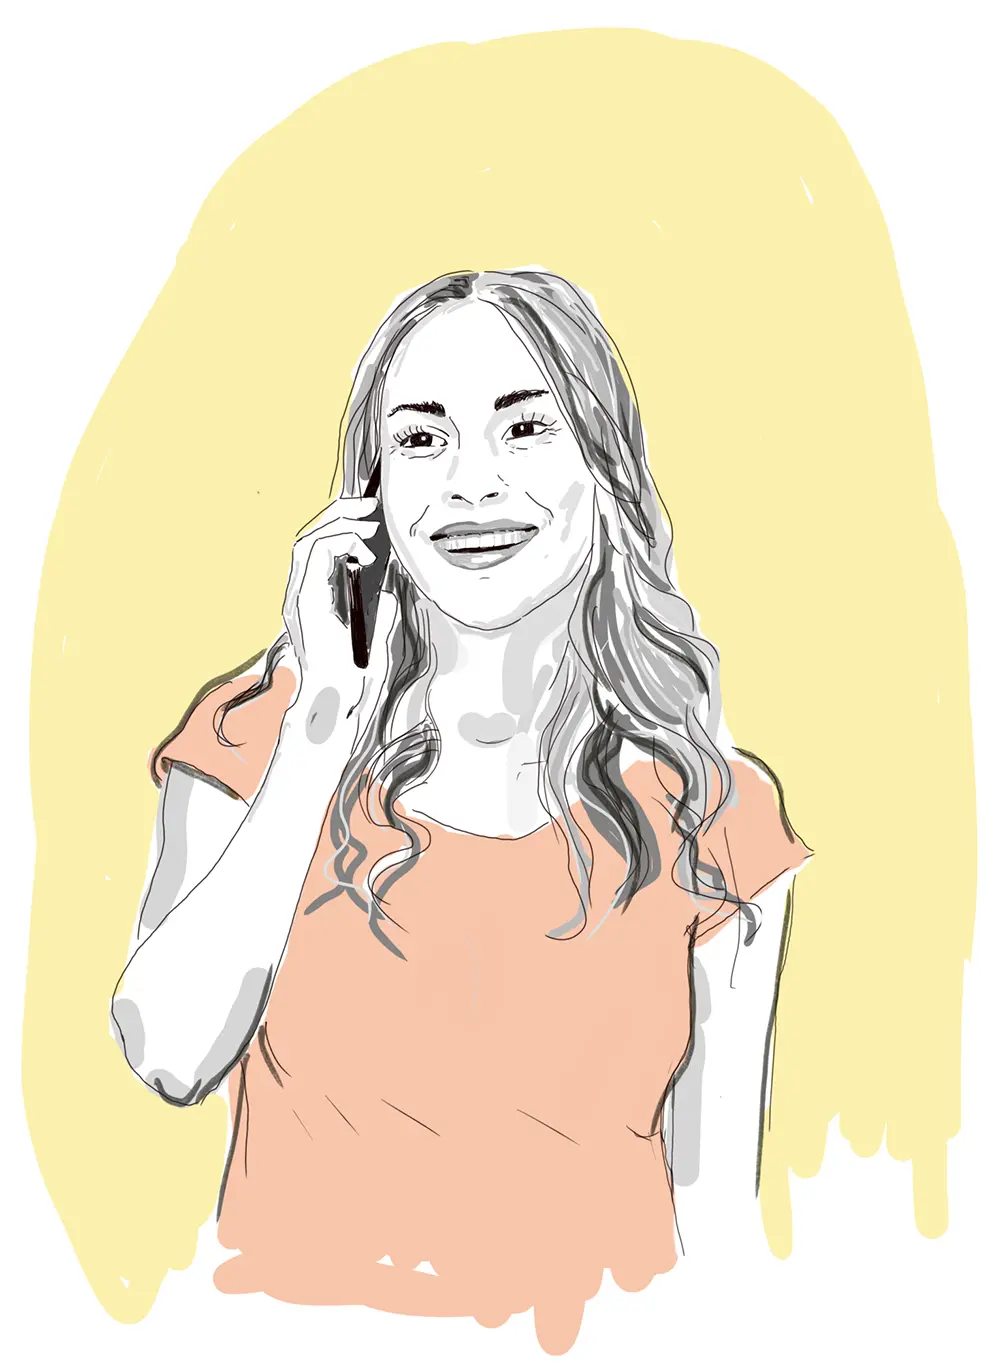 Zeichnung einer fröhlichen Frau die ein Smartphone am Ohr hält. Sie kontaktiert das Team der GfG Akademie um sich über Weiterbildungen zu informieren